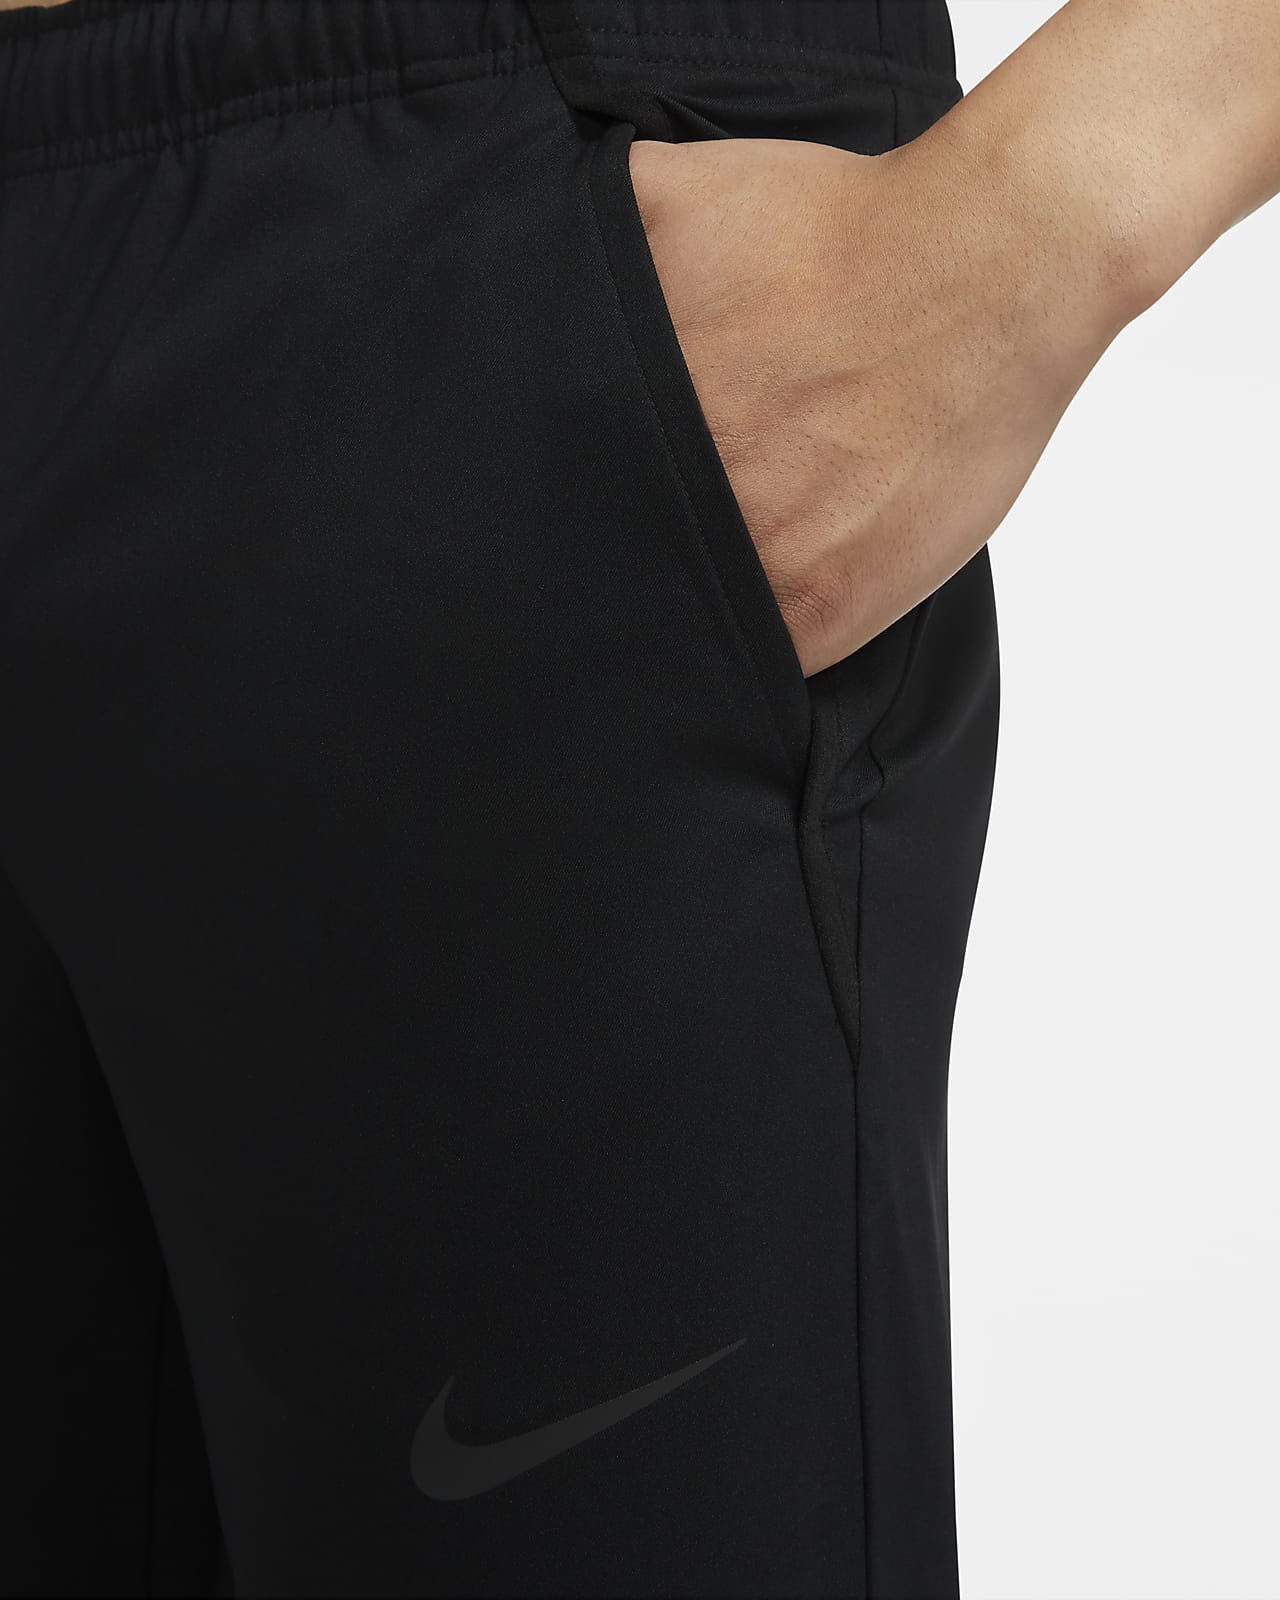 Nike Dri-FIT Men's Training Trousers. Nike